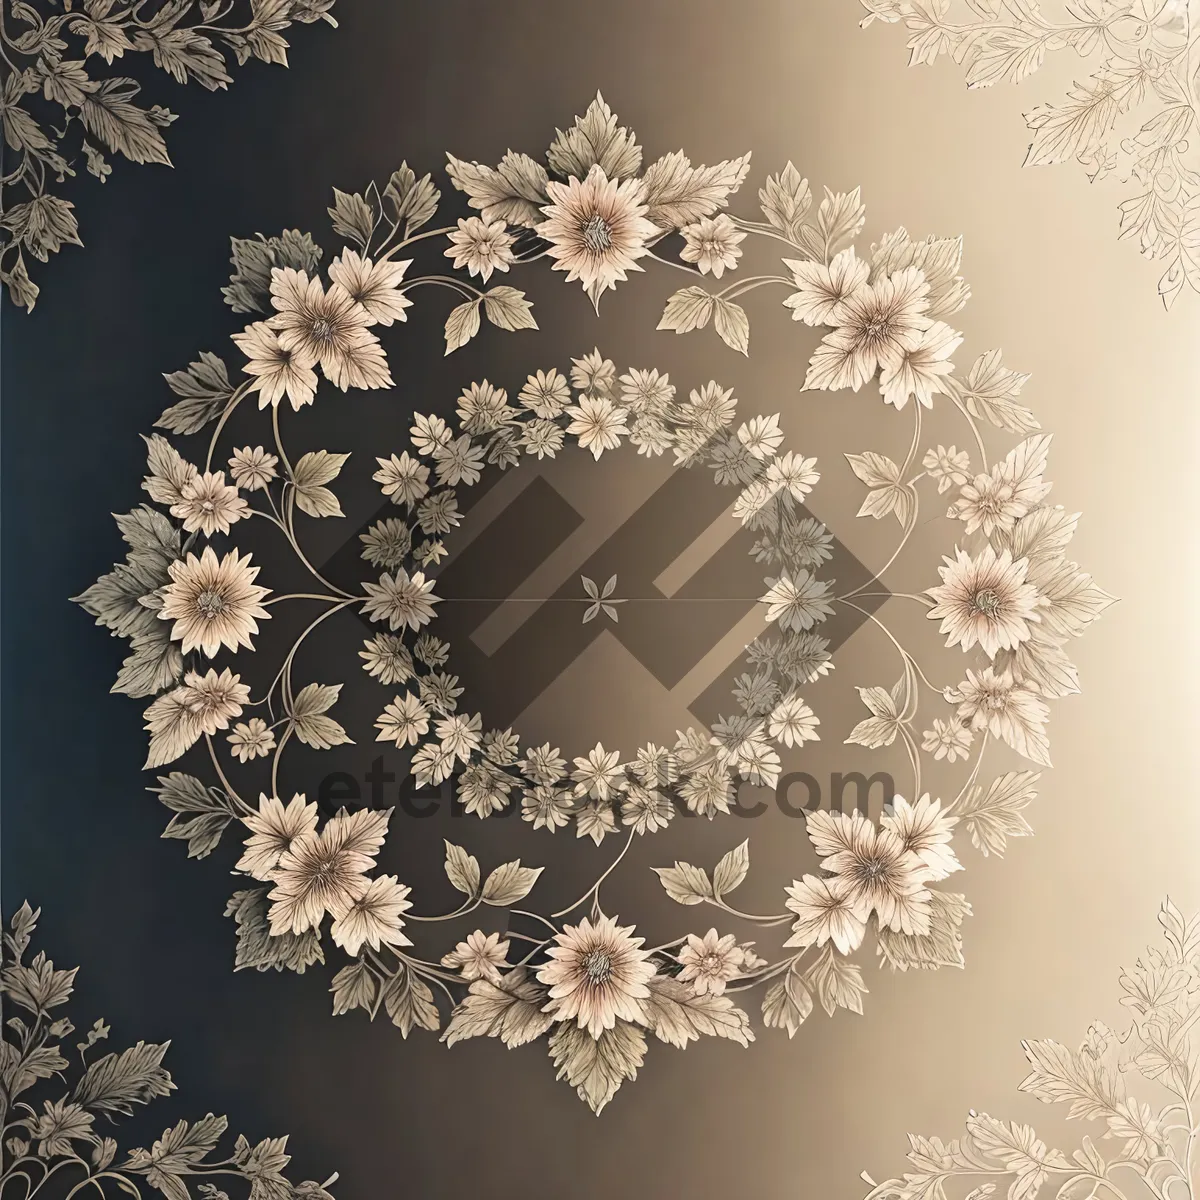 Picture of Snowflake Ornate Arabesque Design for Winter Decor